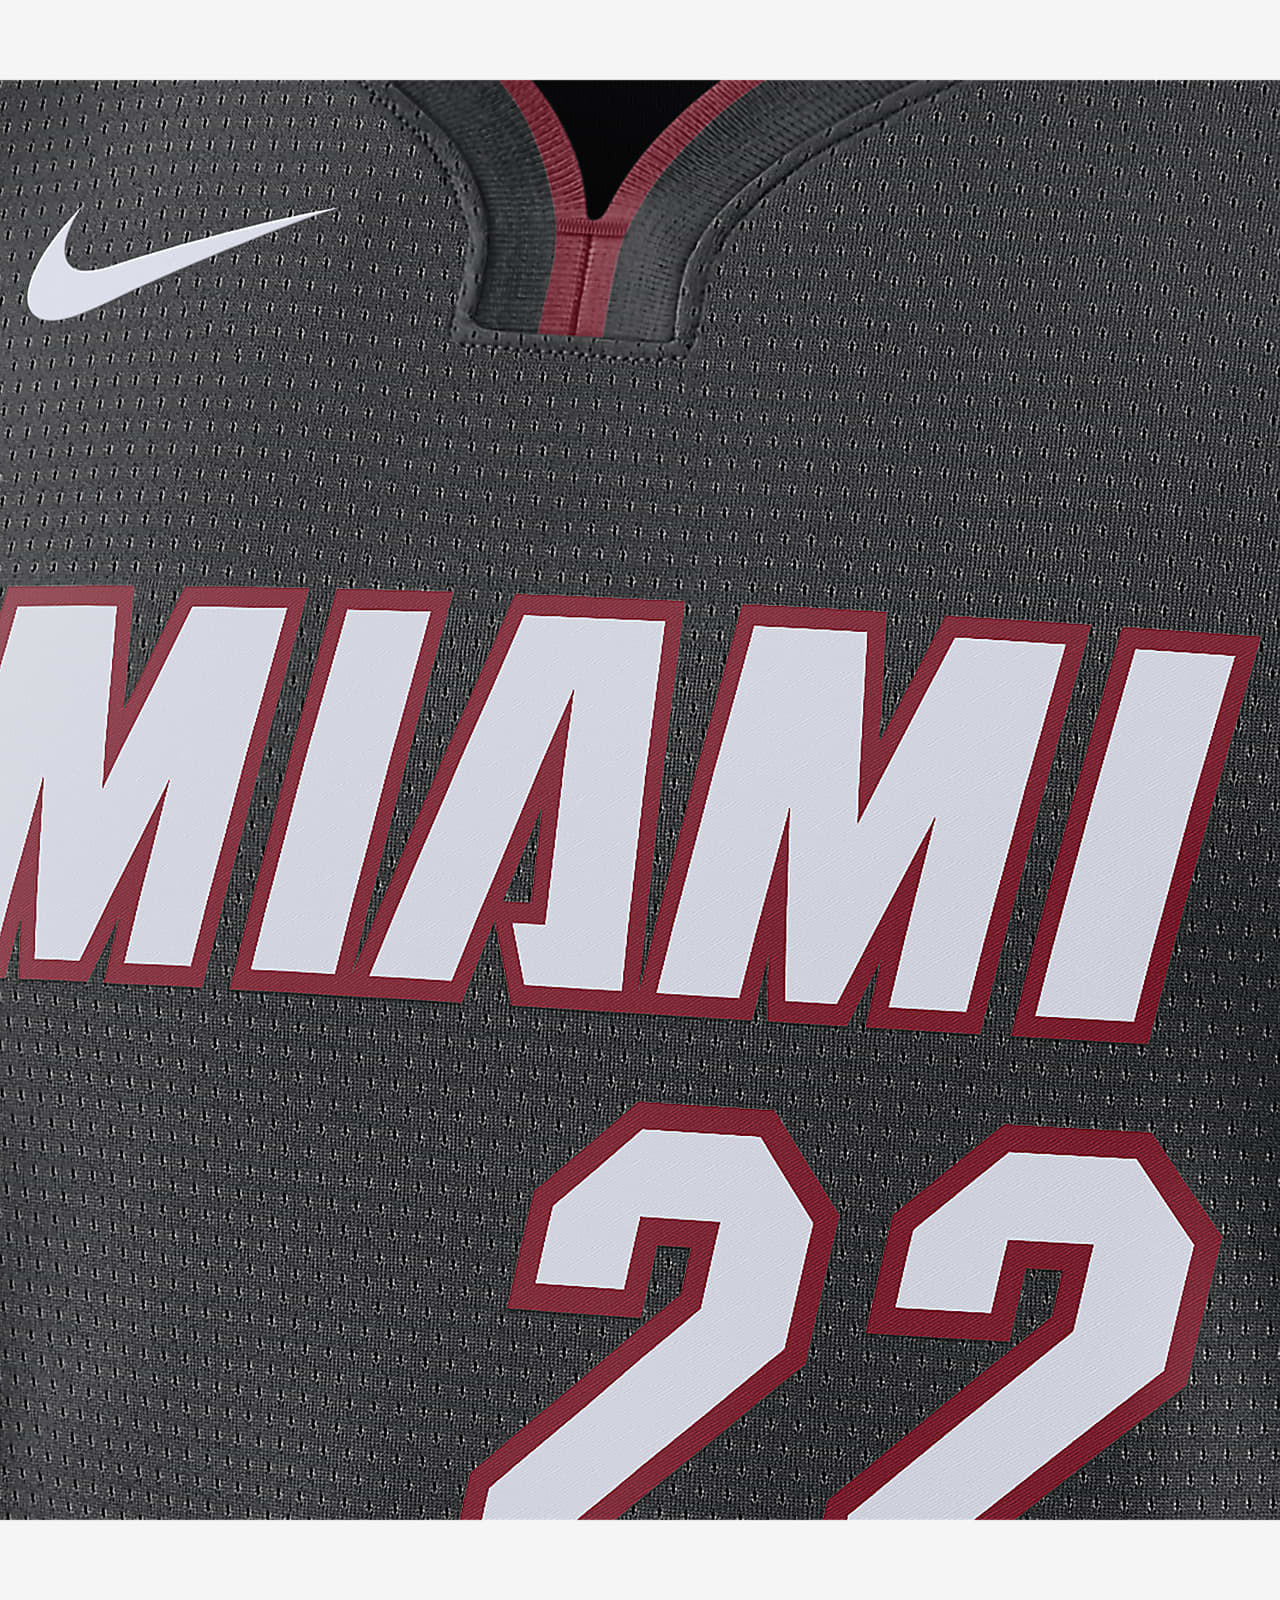 Miami Heat lanzará su uniforme Classic Edition para la temporada